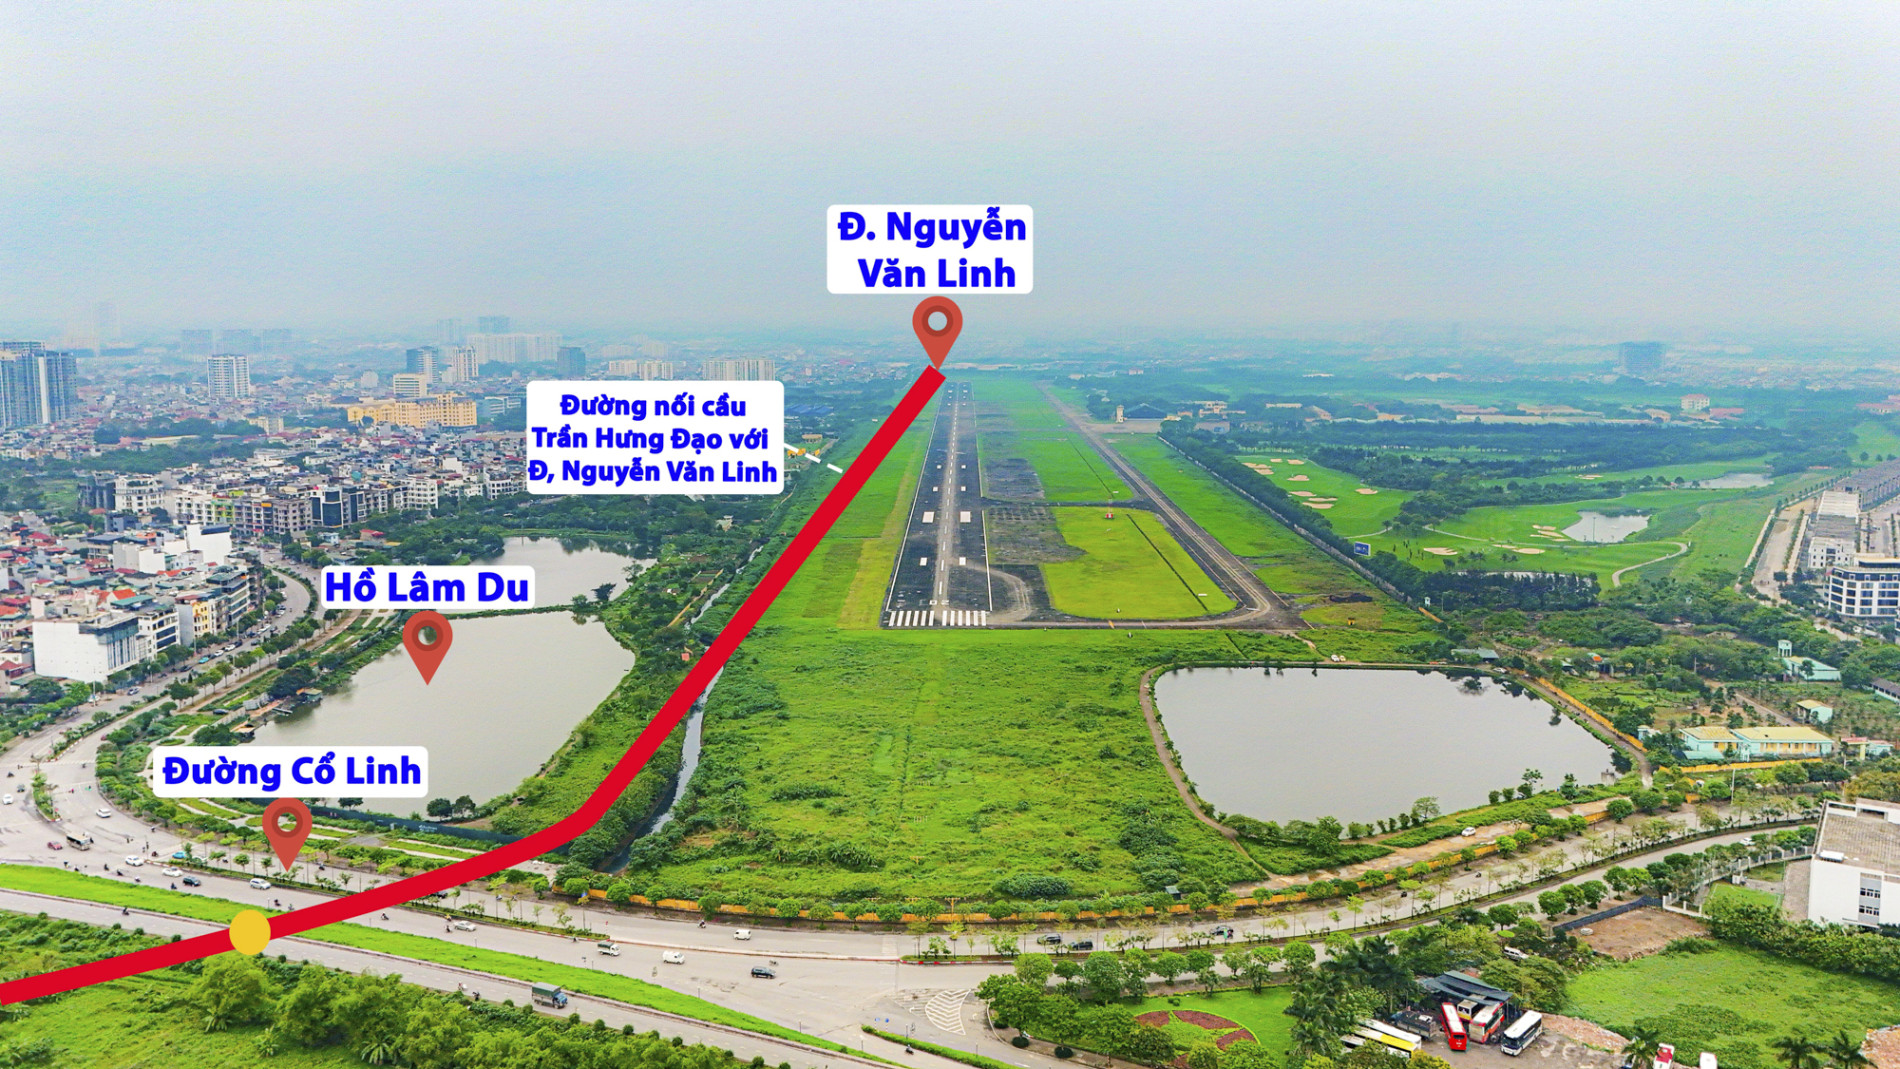 Khu vực chuẩn bị được xây “siêu cầu” 16.000 tỷ, nối 2 quận trung tâm Thủ đô với sân bay- Ảnh 9.